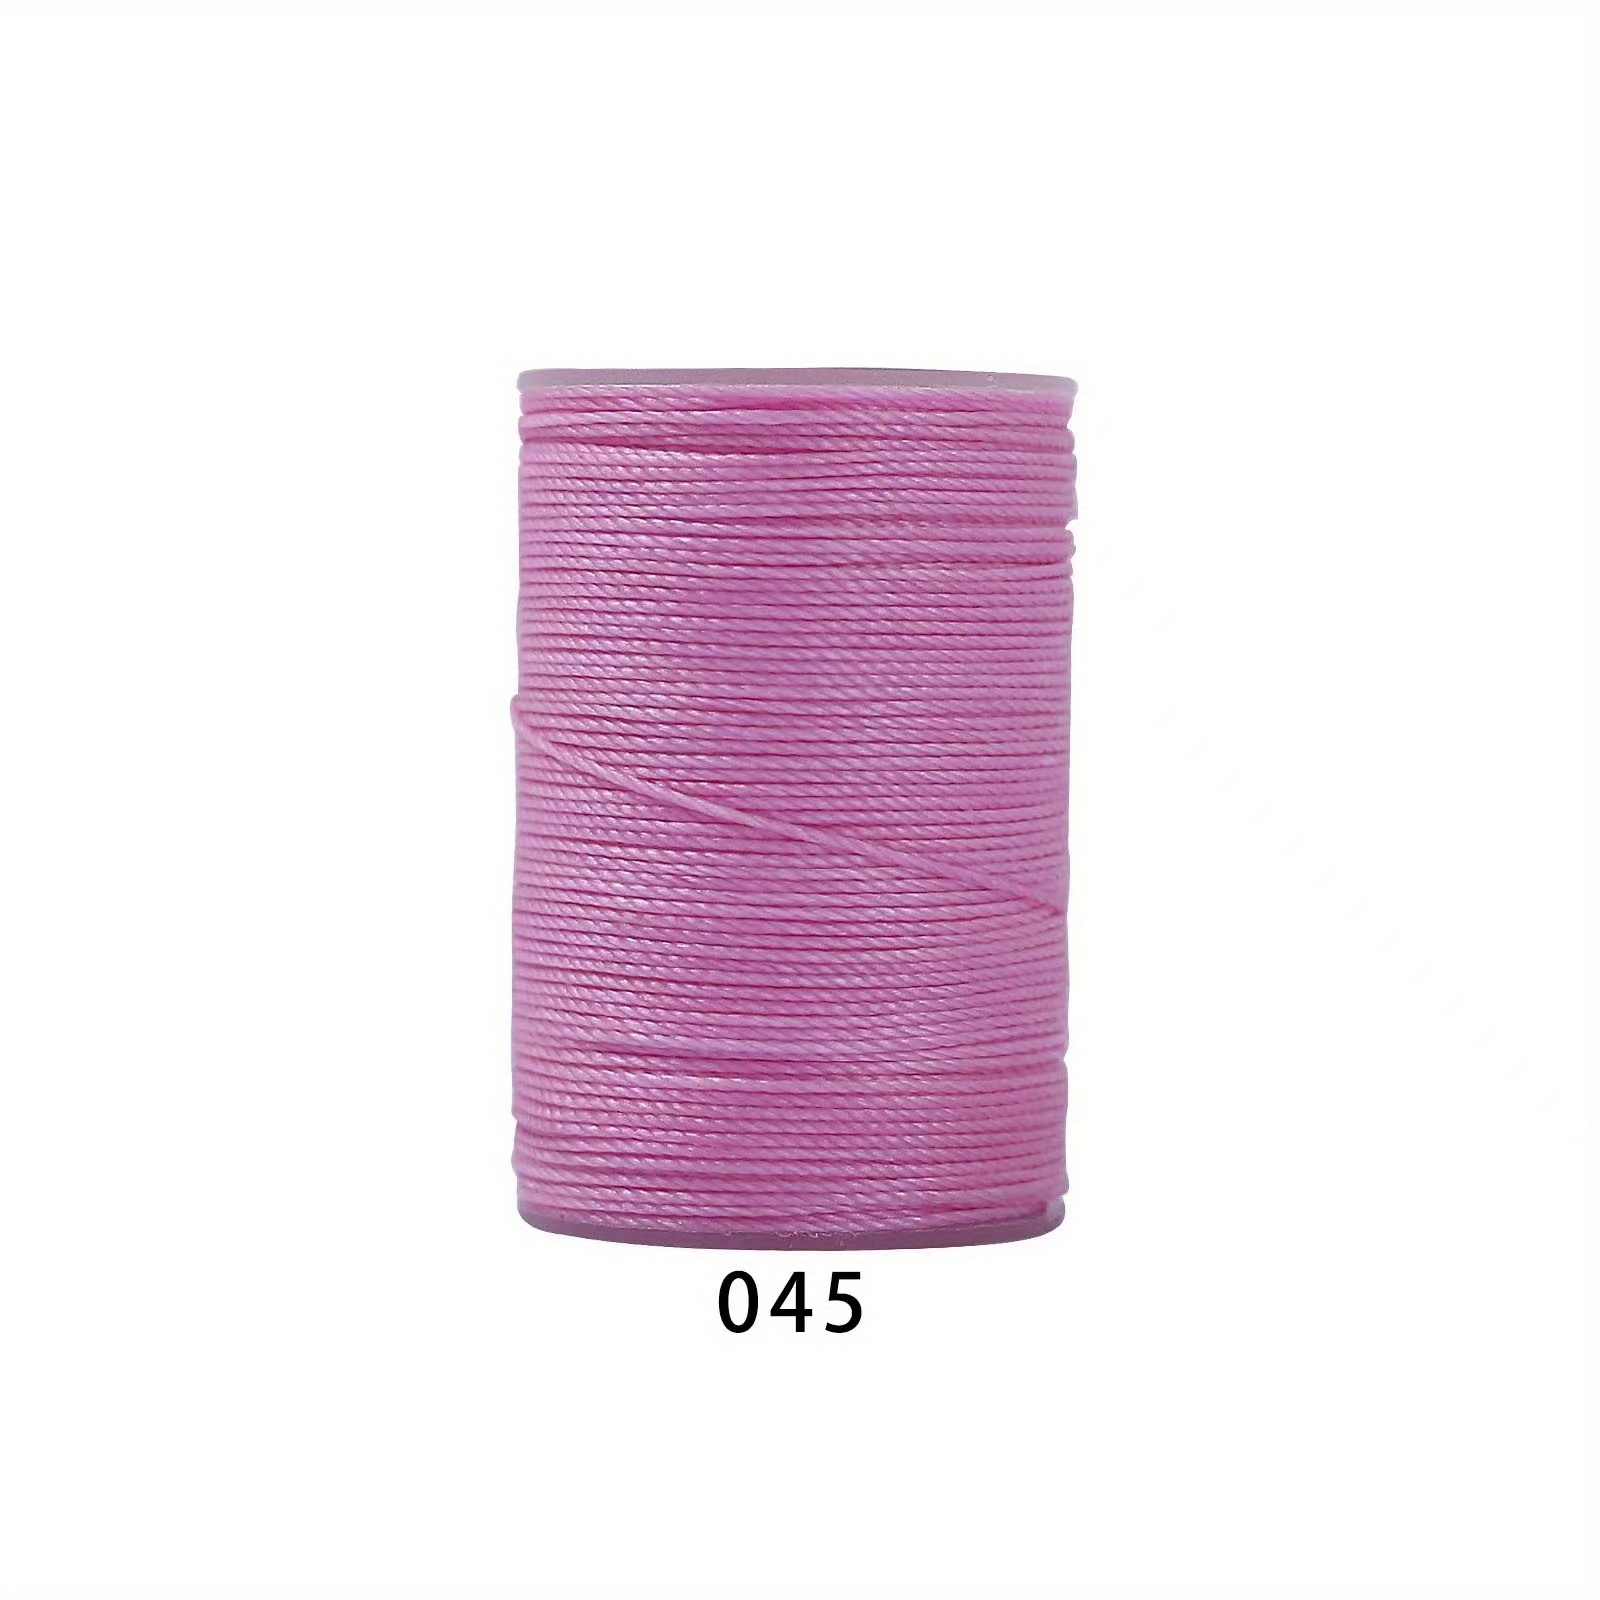 0.45mm round wax thread 80m hand